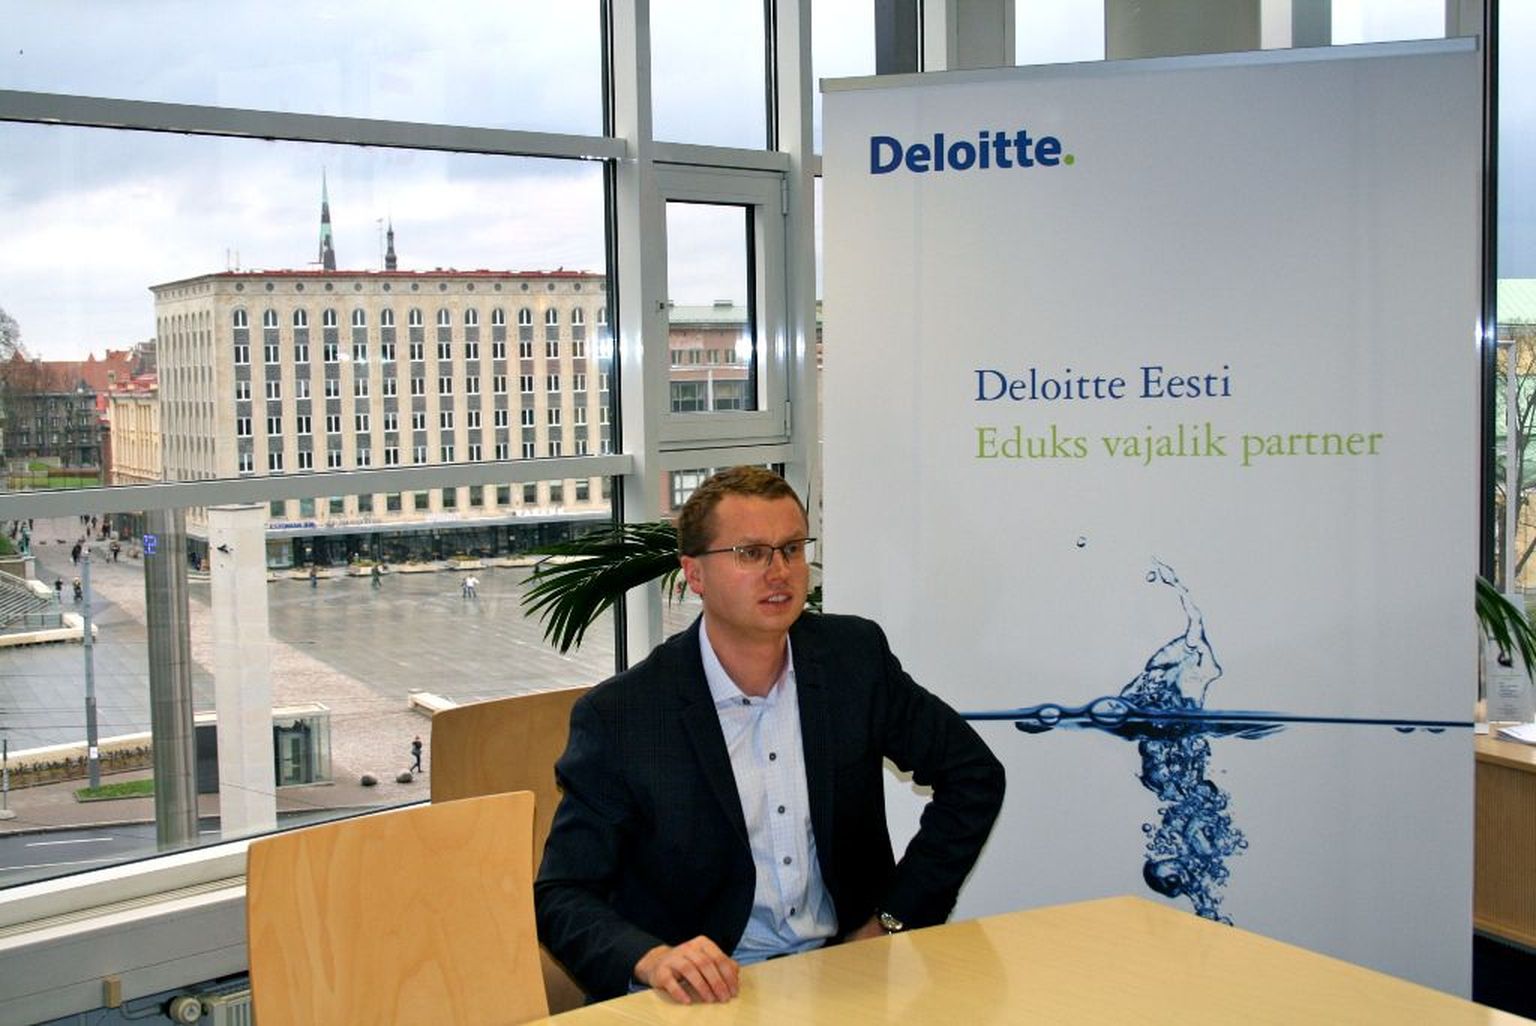 Deloitte advokaadibürood asub juhtima vandeadvokaat Rait Kaarma.